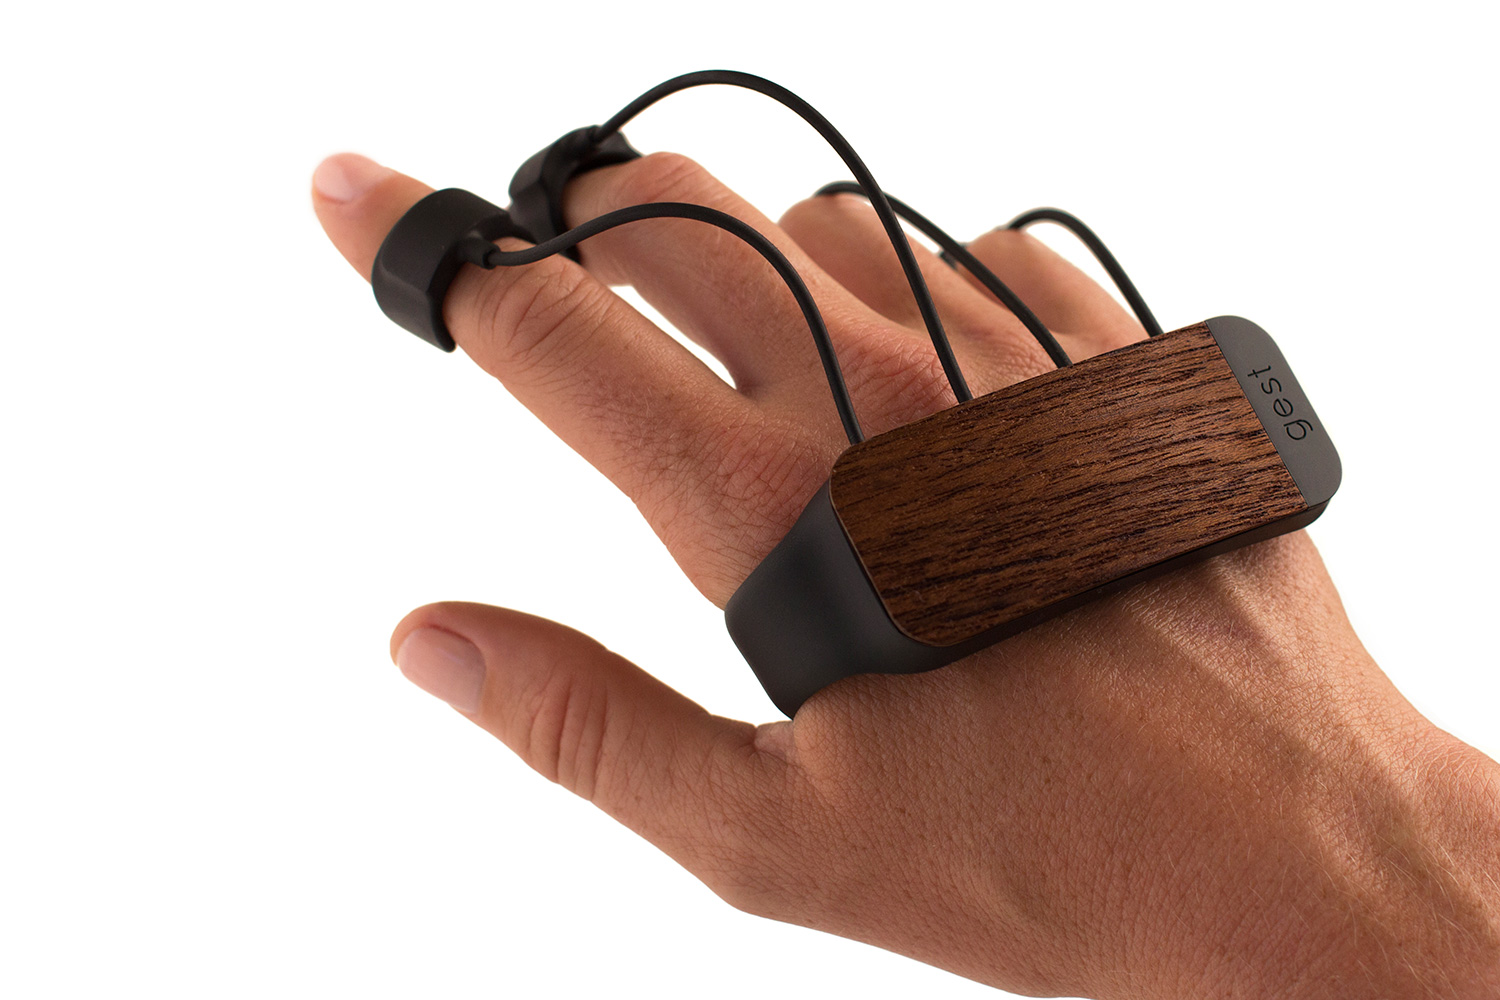 gest gesture sensing glove kickstarter wood reach